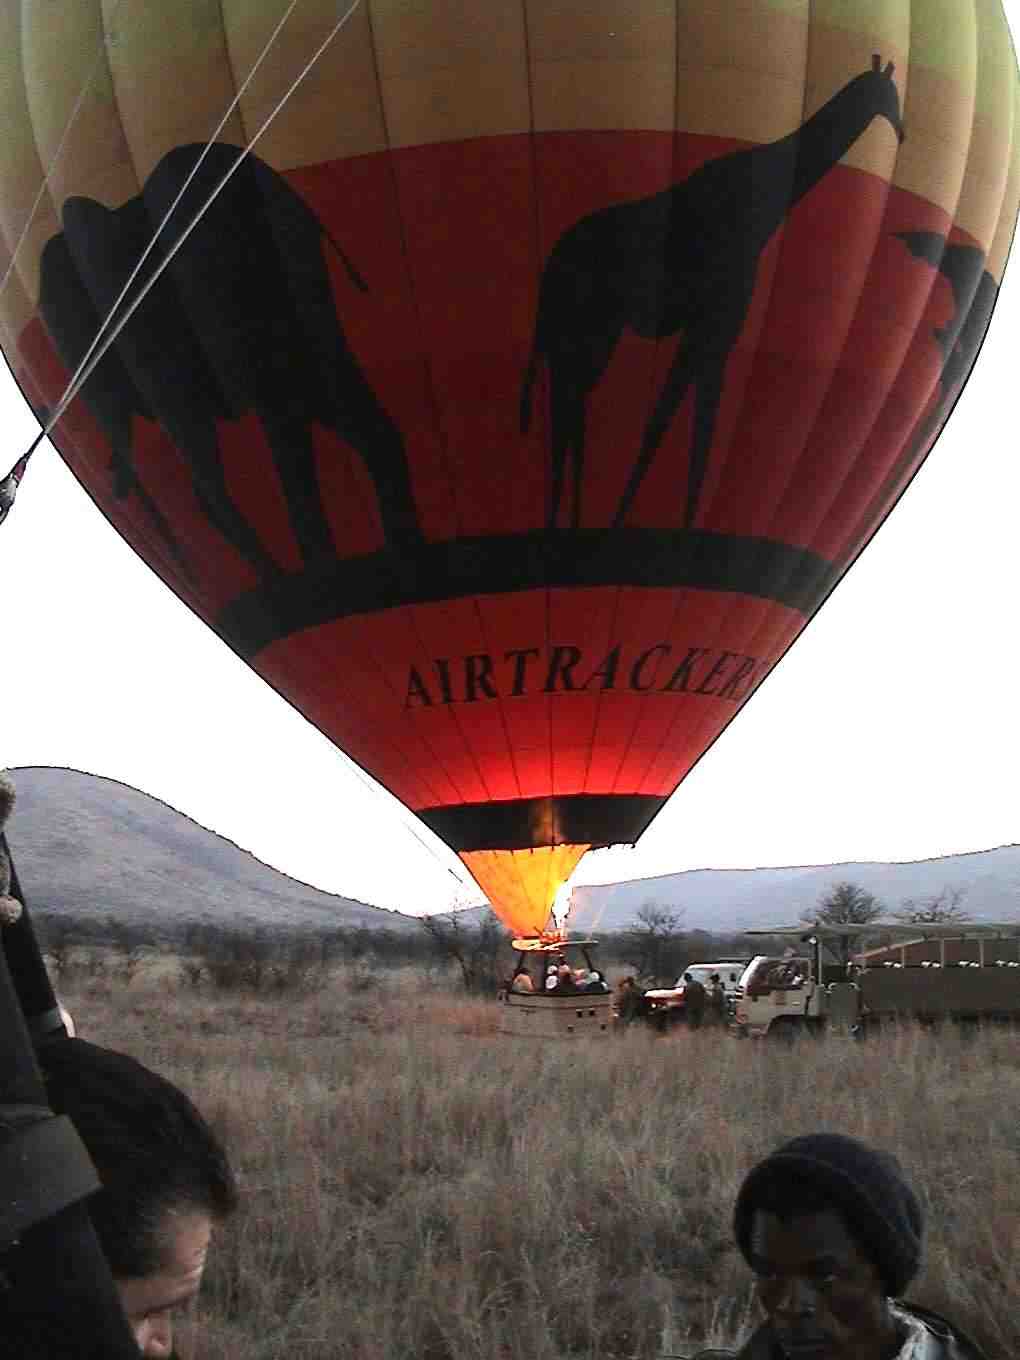 A balloon ride in Pilanesberg National Park